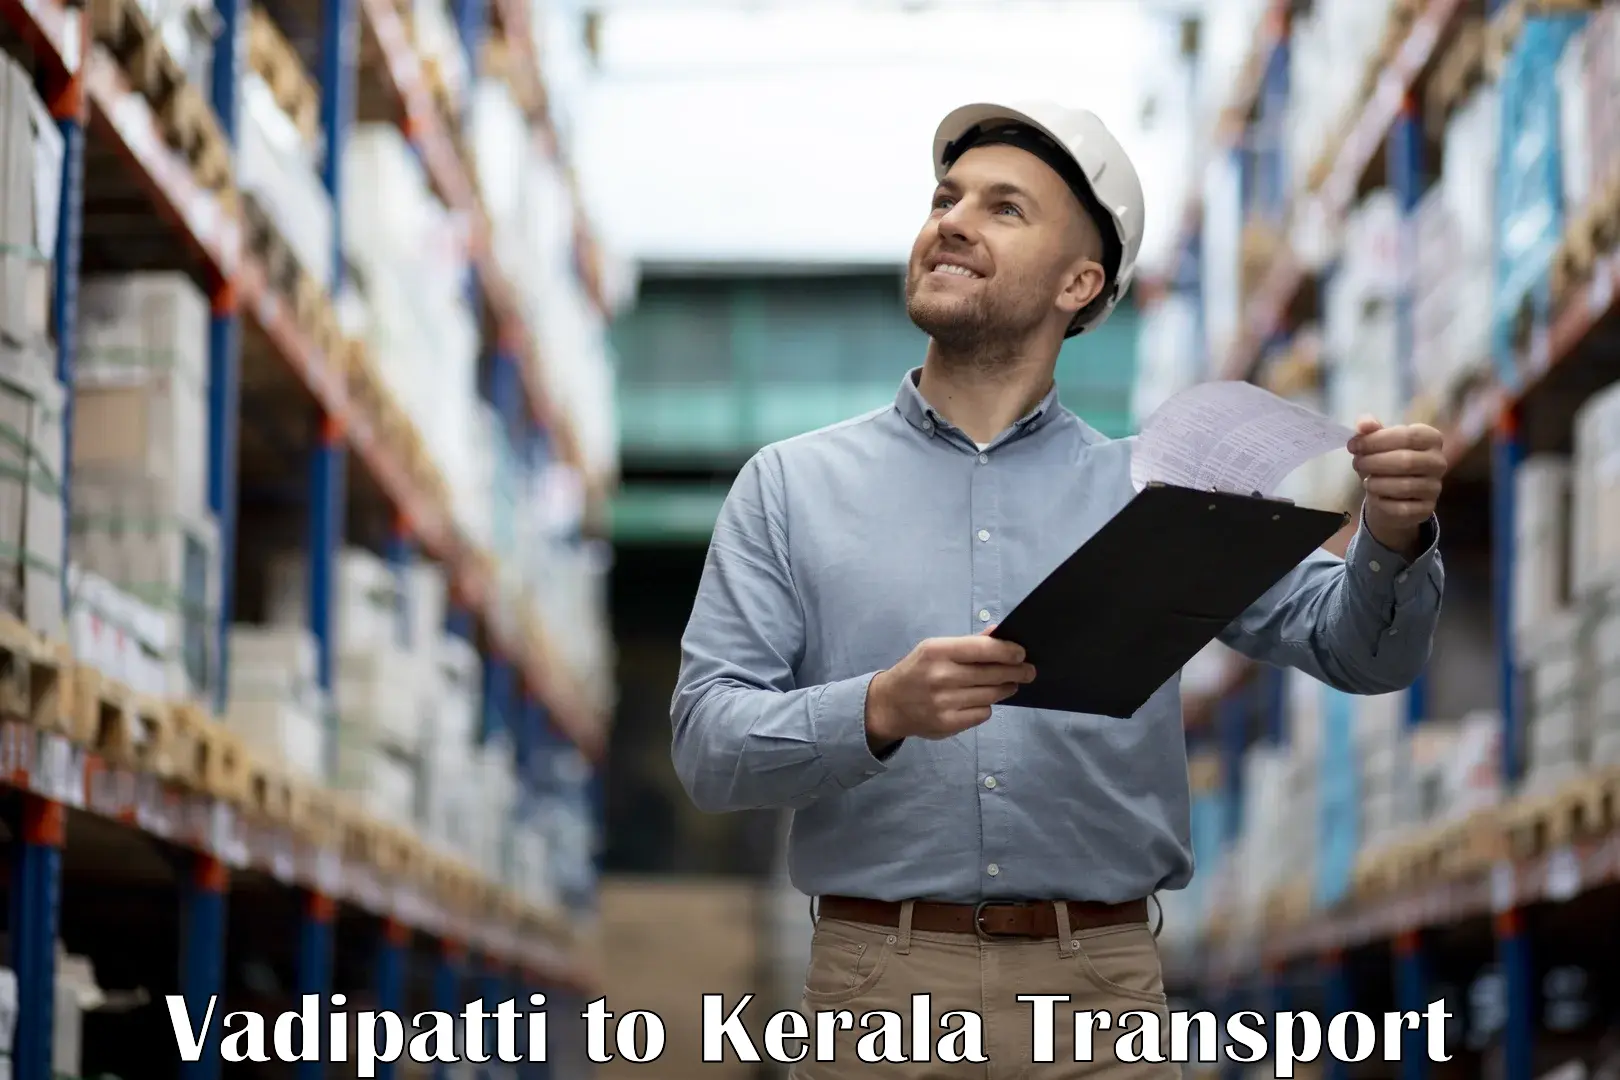 Domestic transport services Vadipatti to Ranni